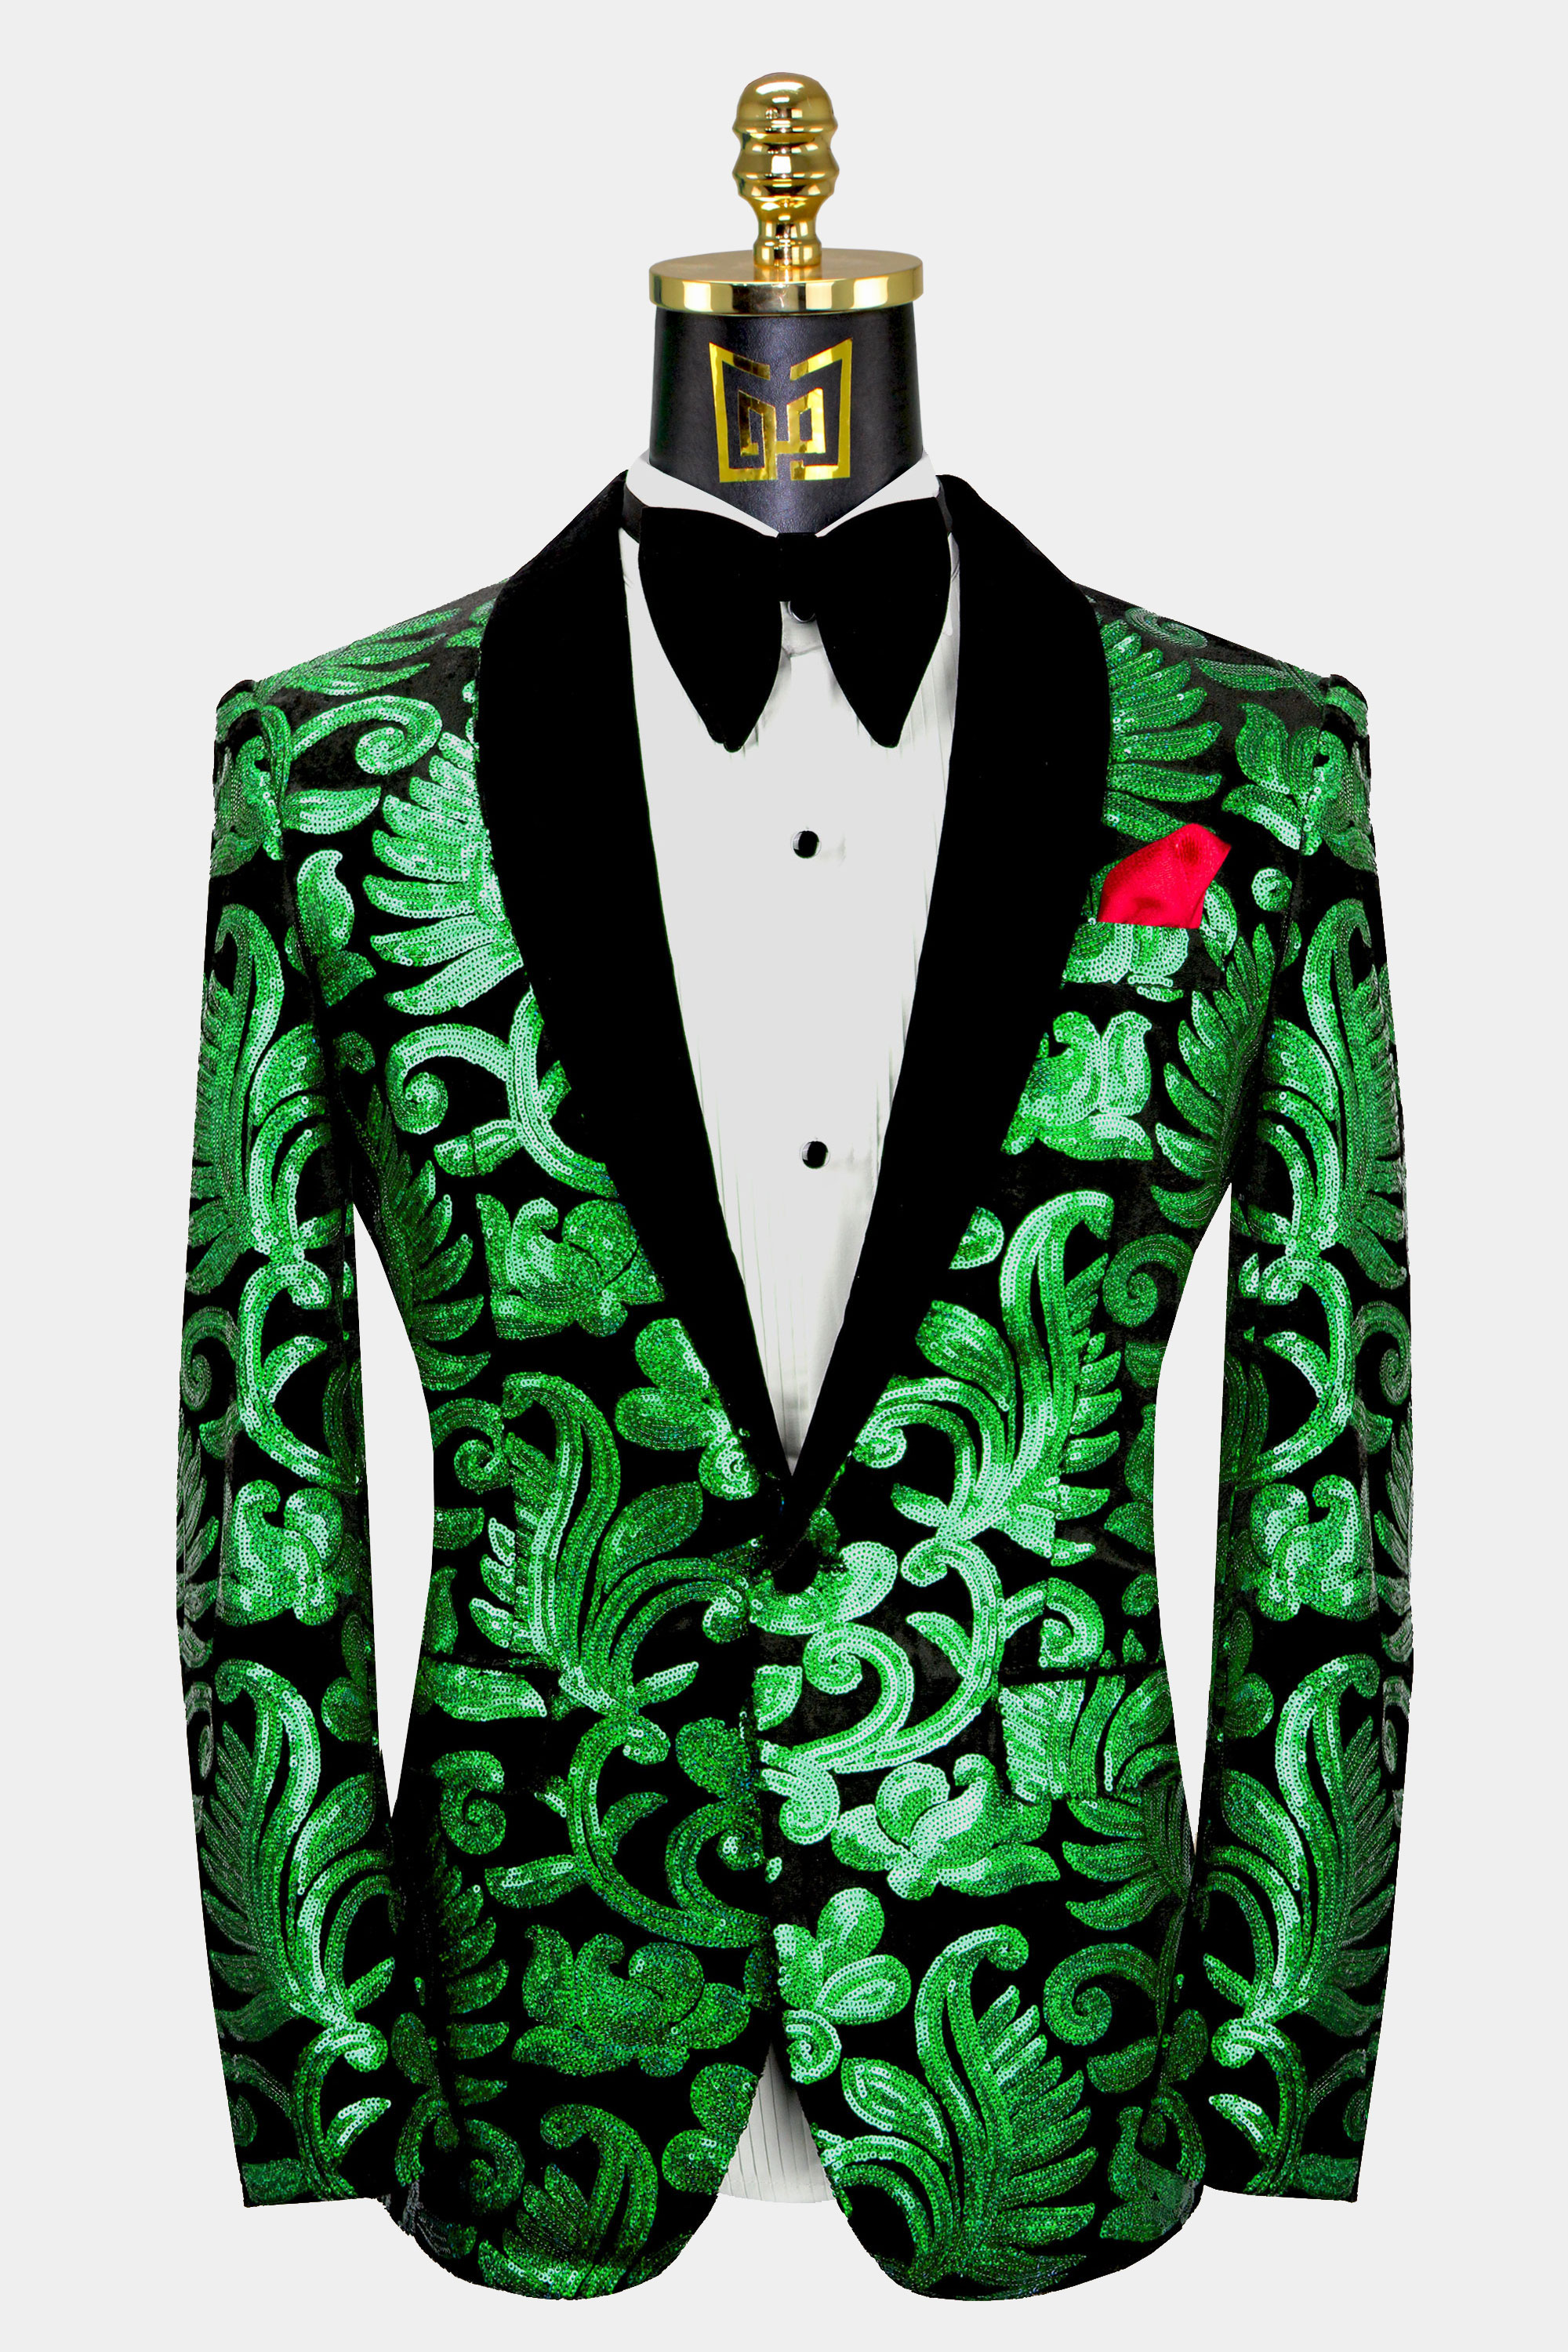 Mens-Green-and-Black-Tuxedo-Jacket-Wedding-Prom-Suit-from-Gentlemansguru.com